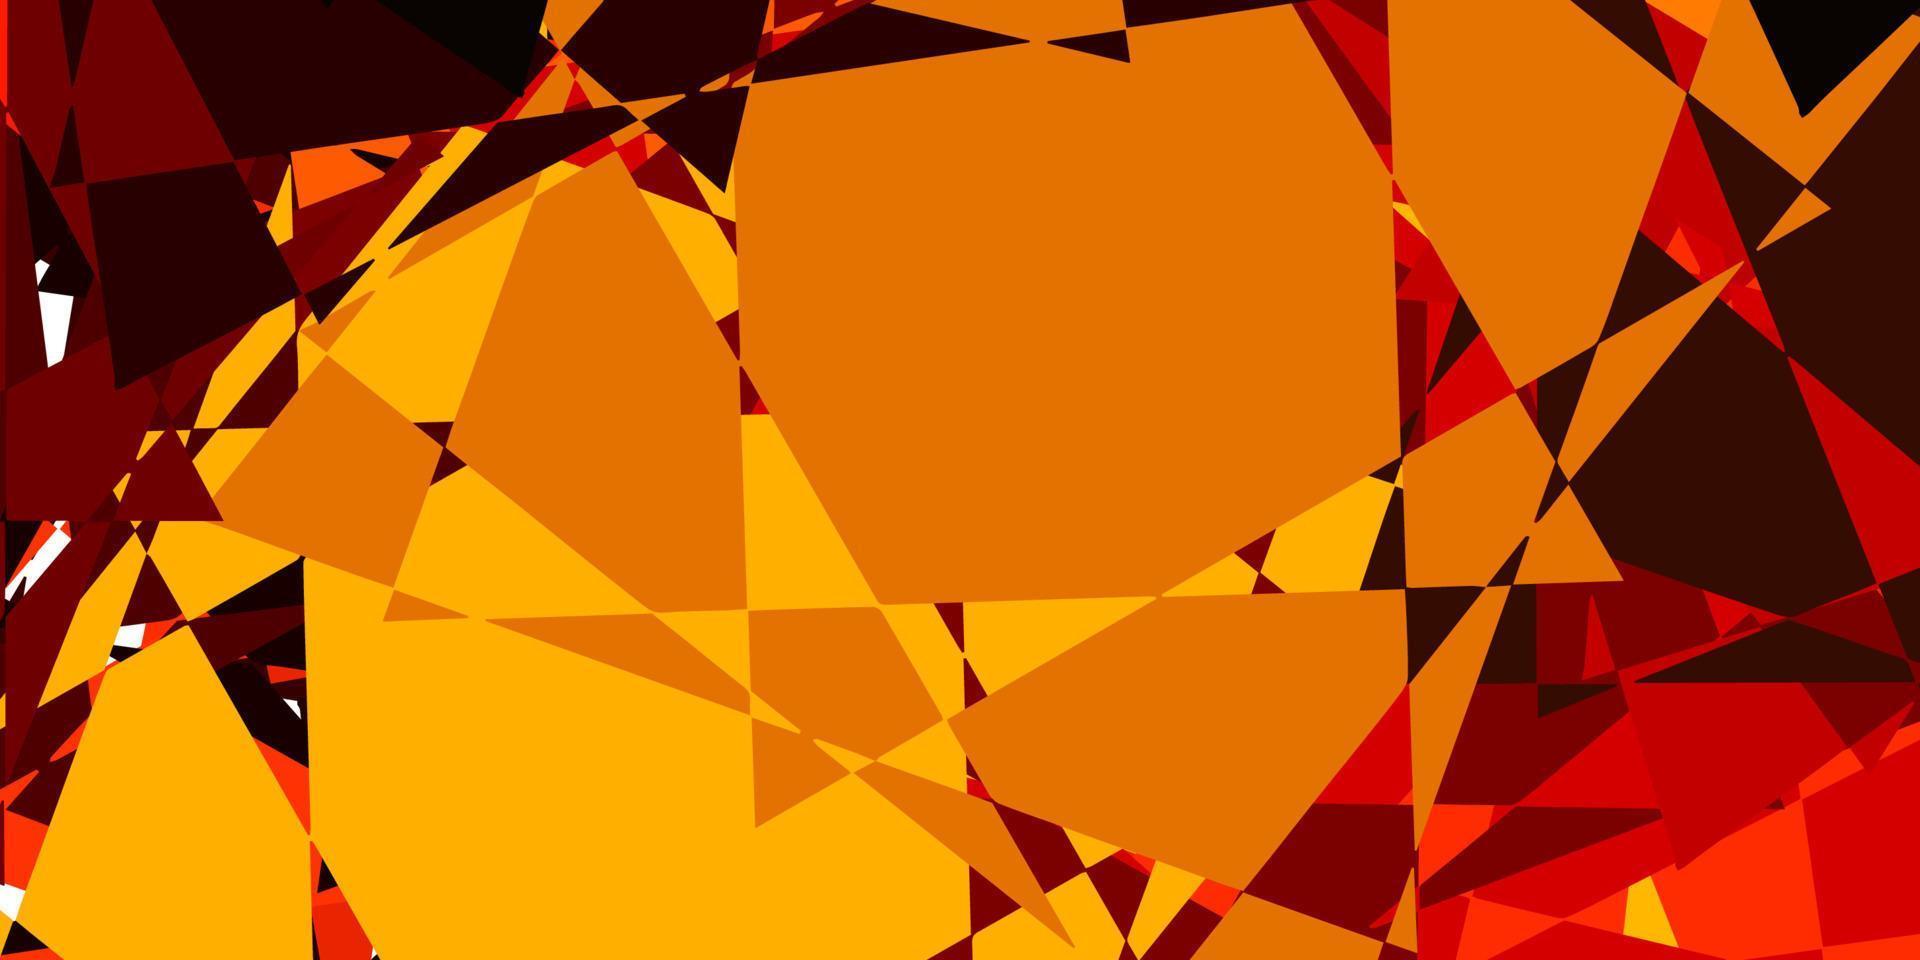 fond de vecteur orange foncé avec des formes polygonales.